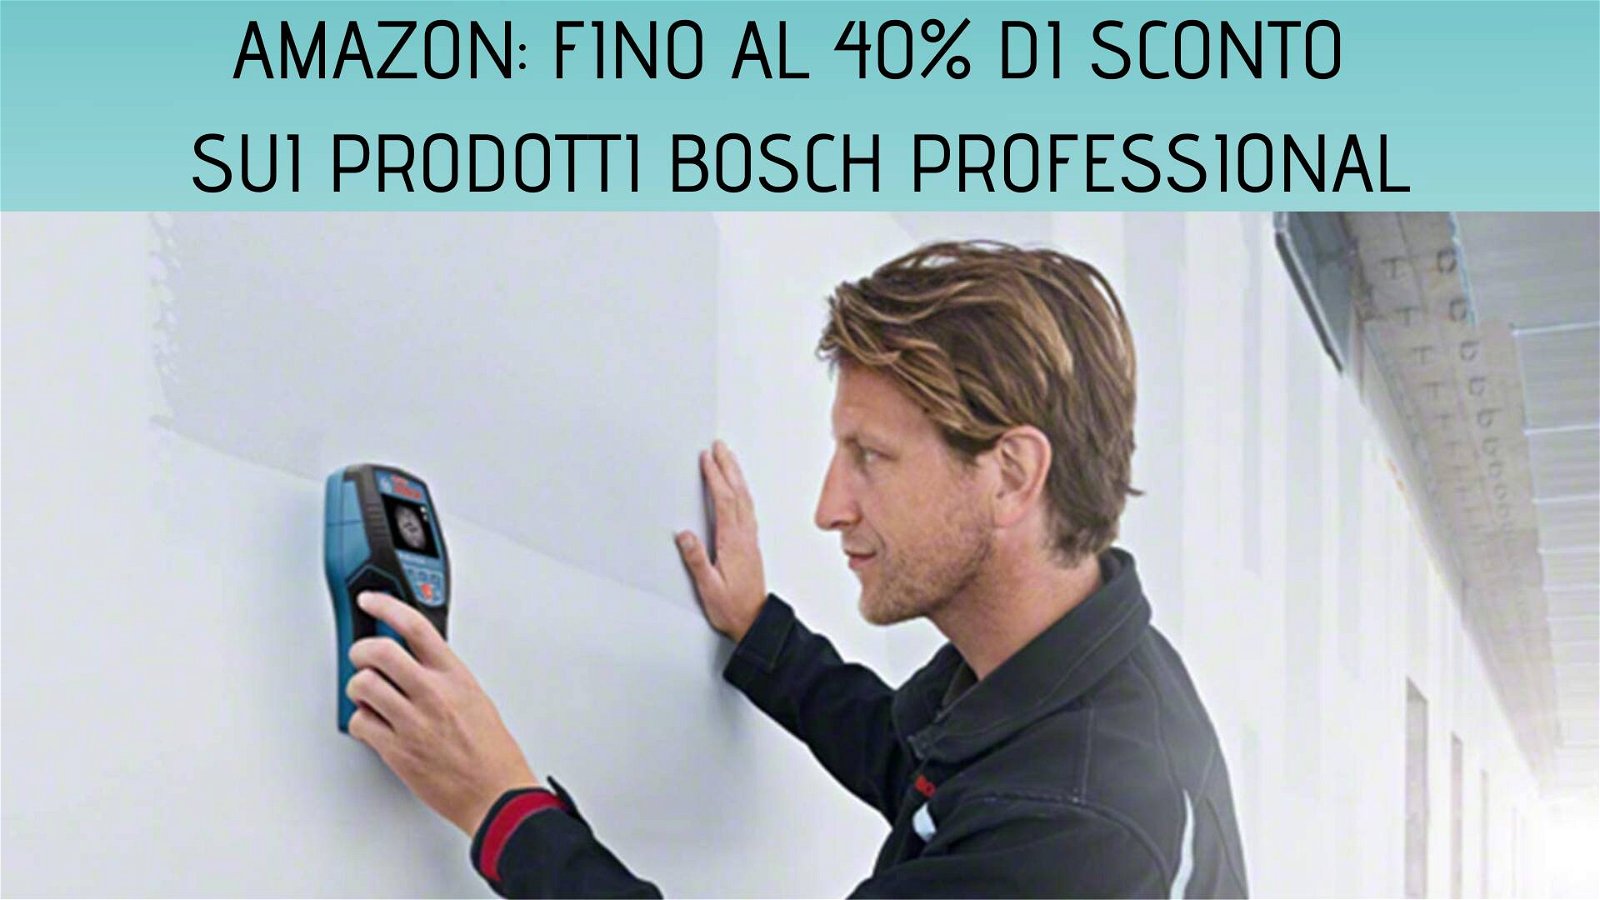 Immagine di Amazon: fino al 40% di sconto sui prodotti Bosch Professional